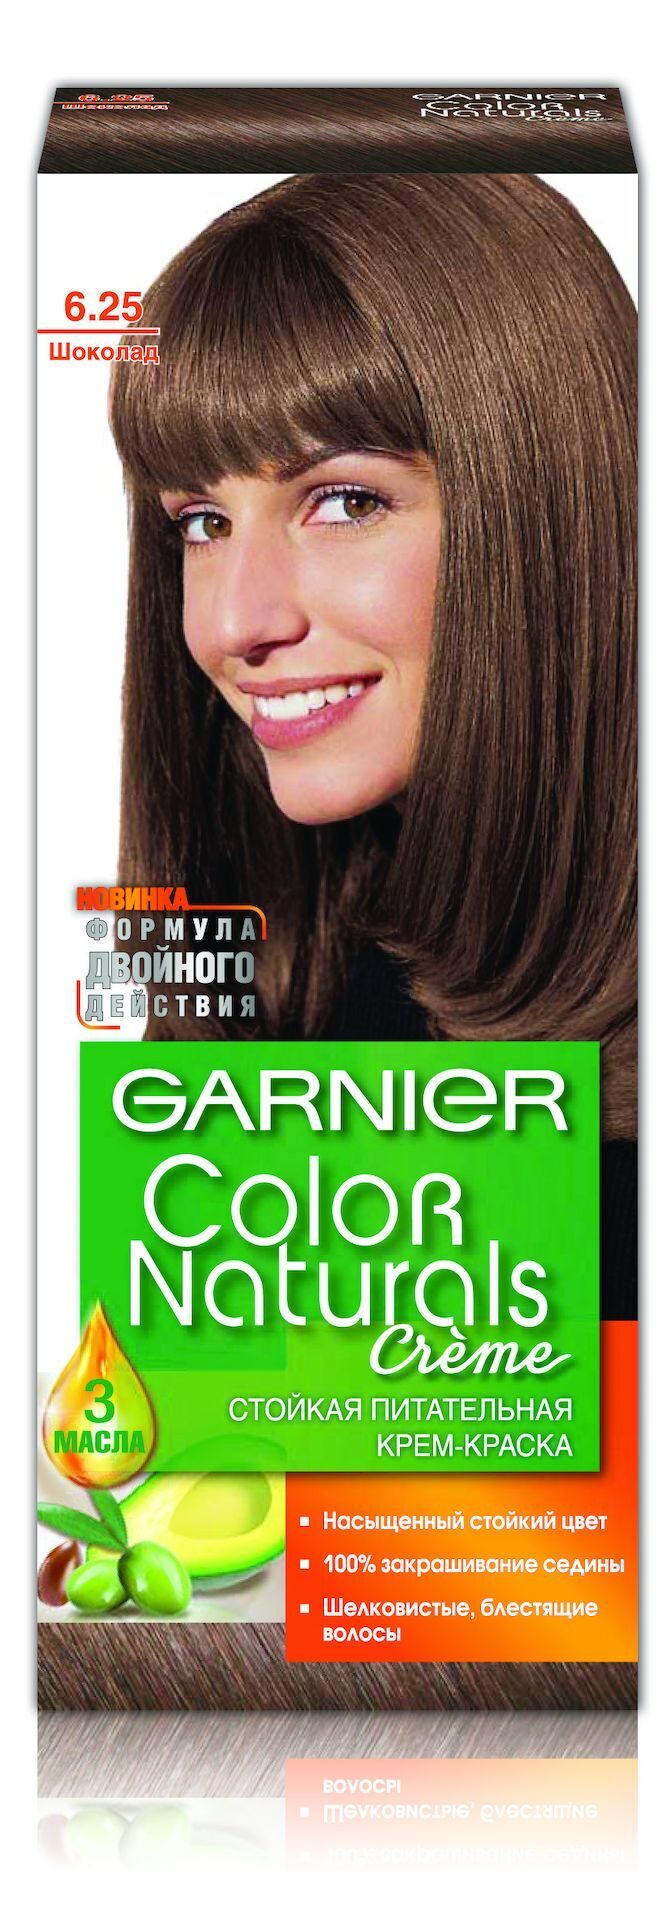 Garnier Color naturals краска крем для волос оттенок 6.25